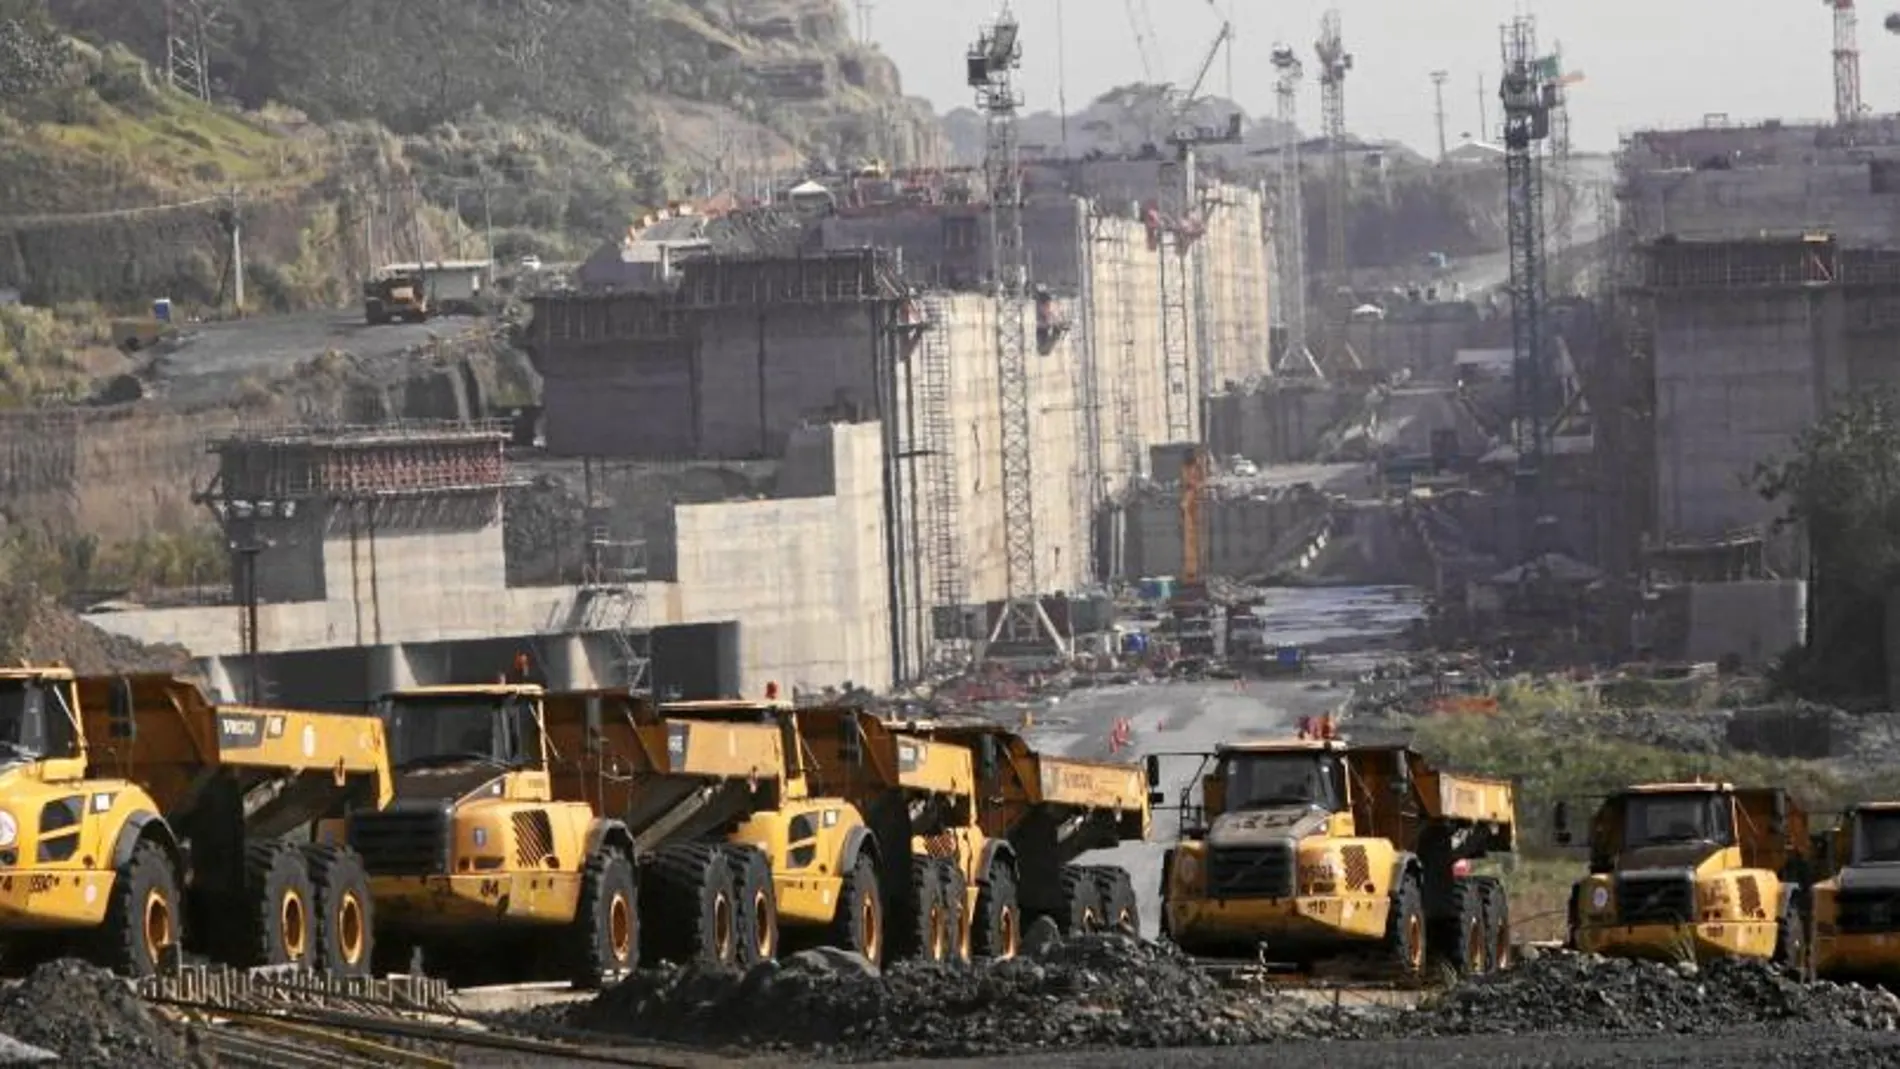 Las obras de ampliación del Canal de Panamá llevan paradas desde el pasado 5 de febrero